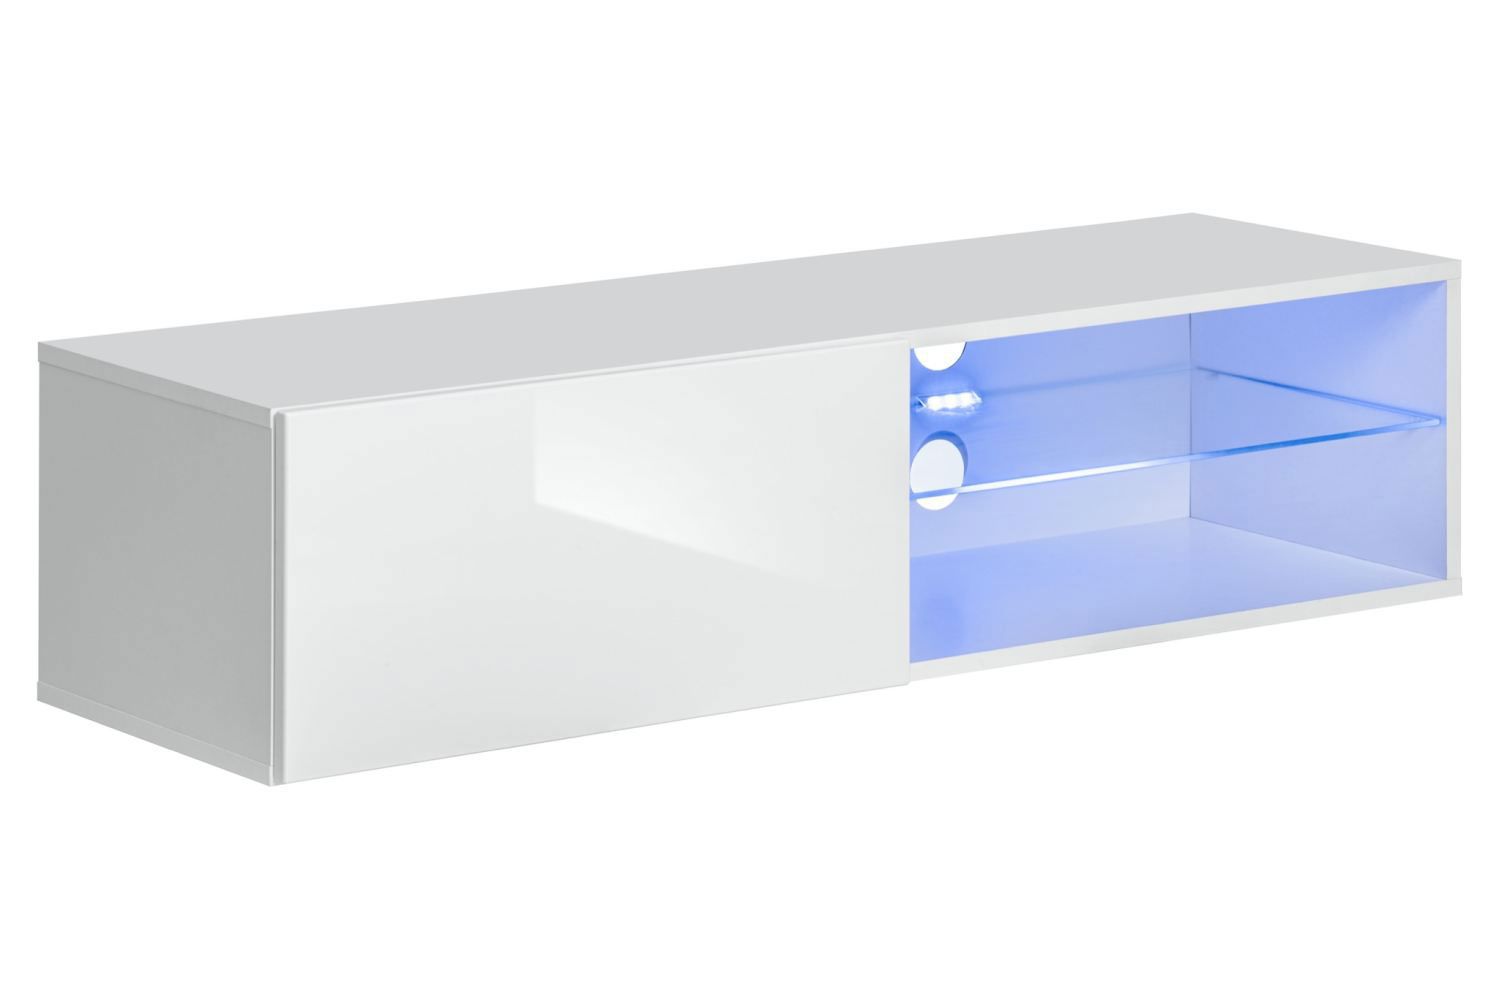 Klein TV-meubel Möllen 21, kleur: wit - Afmetingen: 30 x 120 x 40 cm (H x B x D), met blauwe LED-verlichting